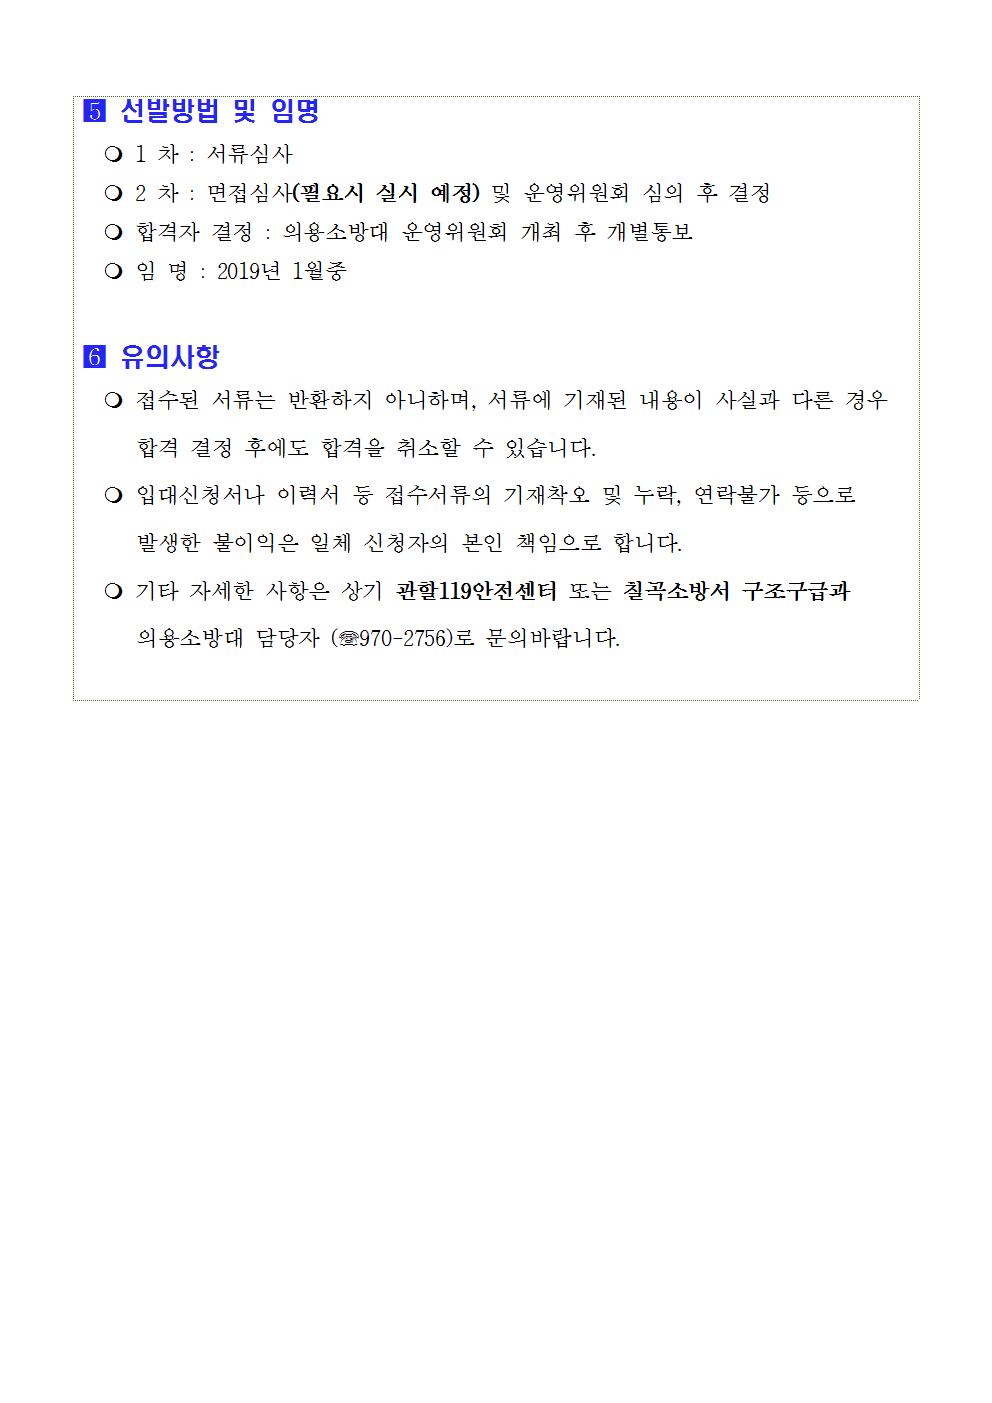 2019년 칠곡소방서 상반기 신규 의용소방대원 모집 공고문003.jpg